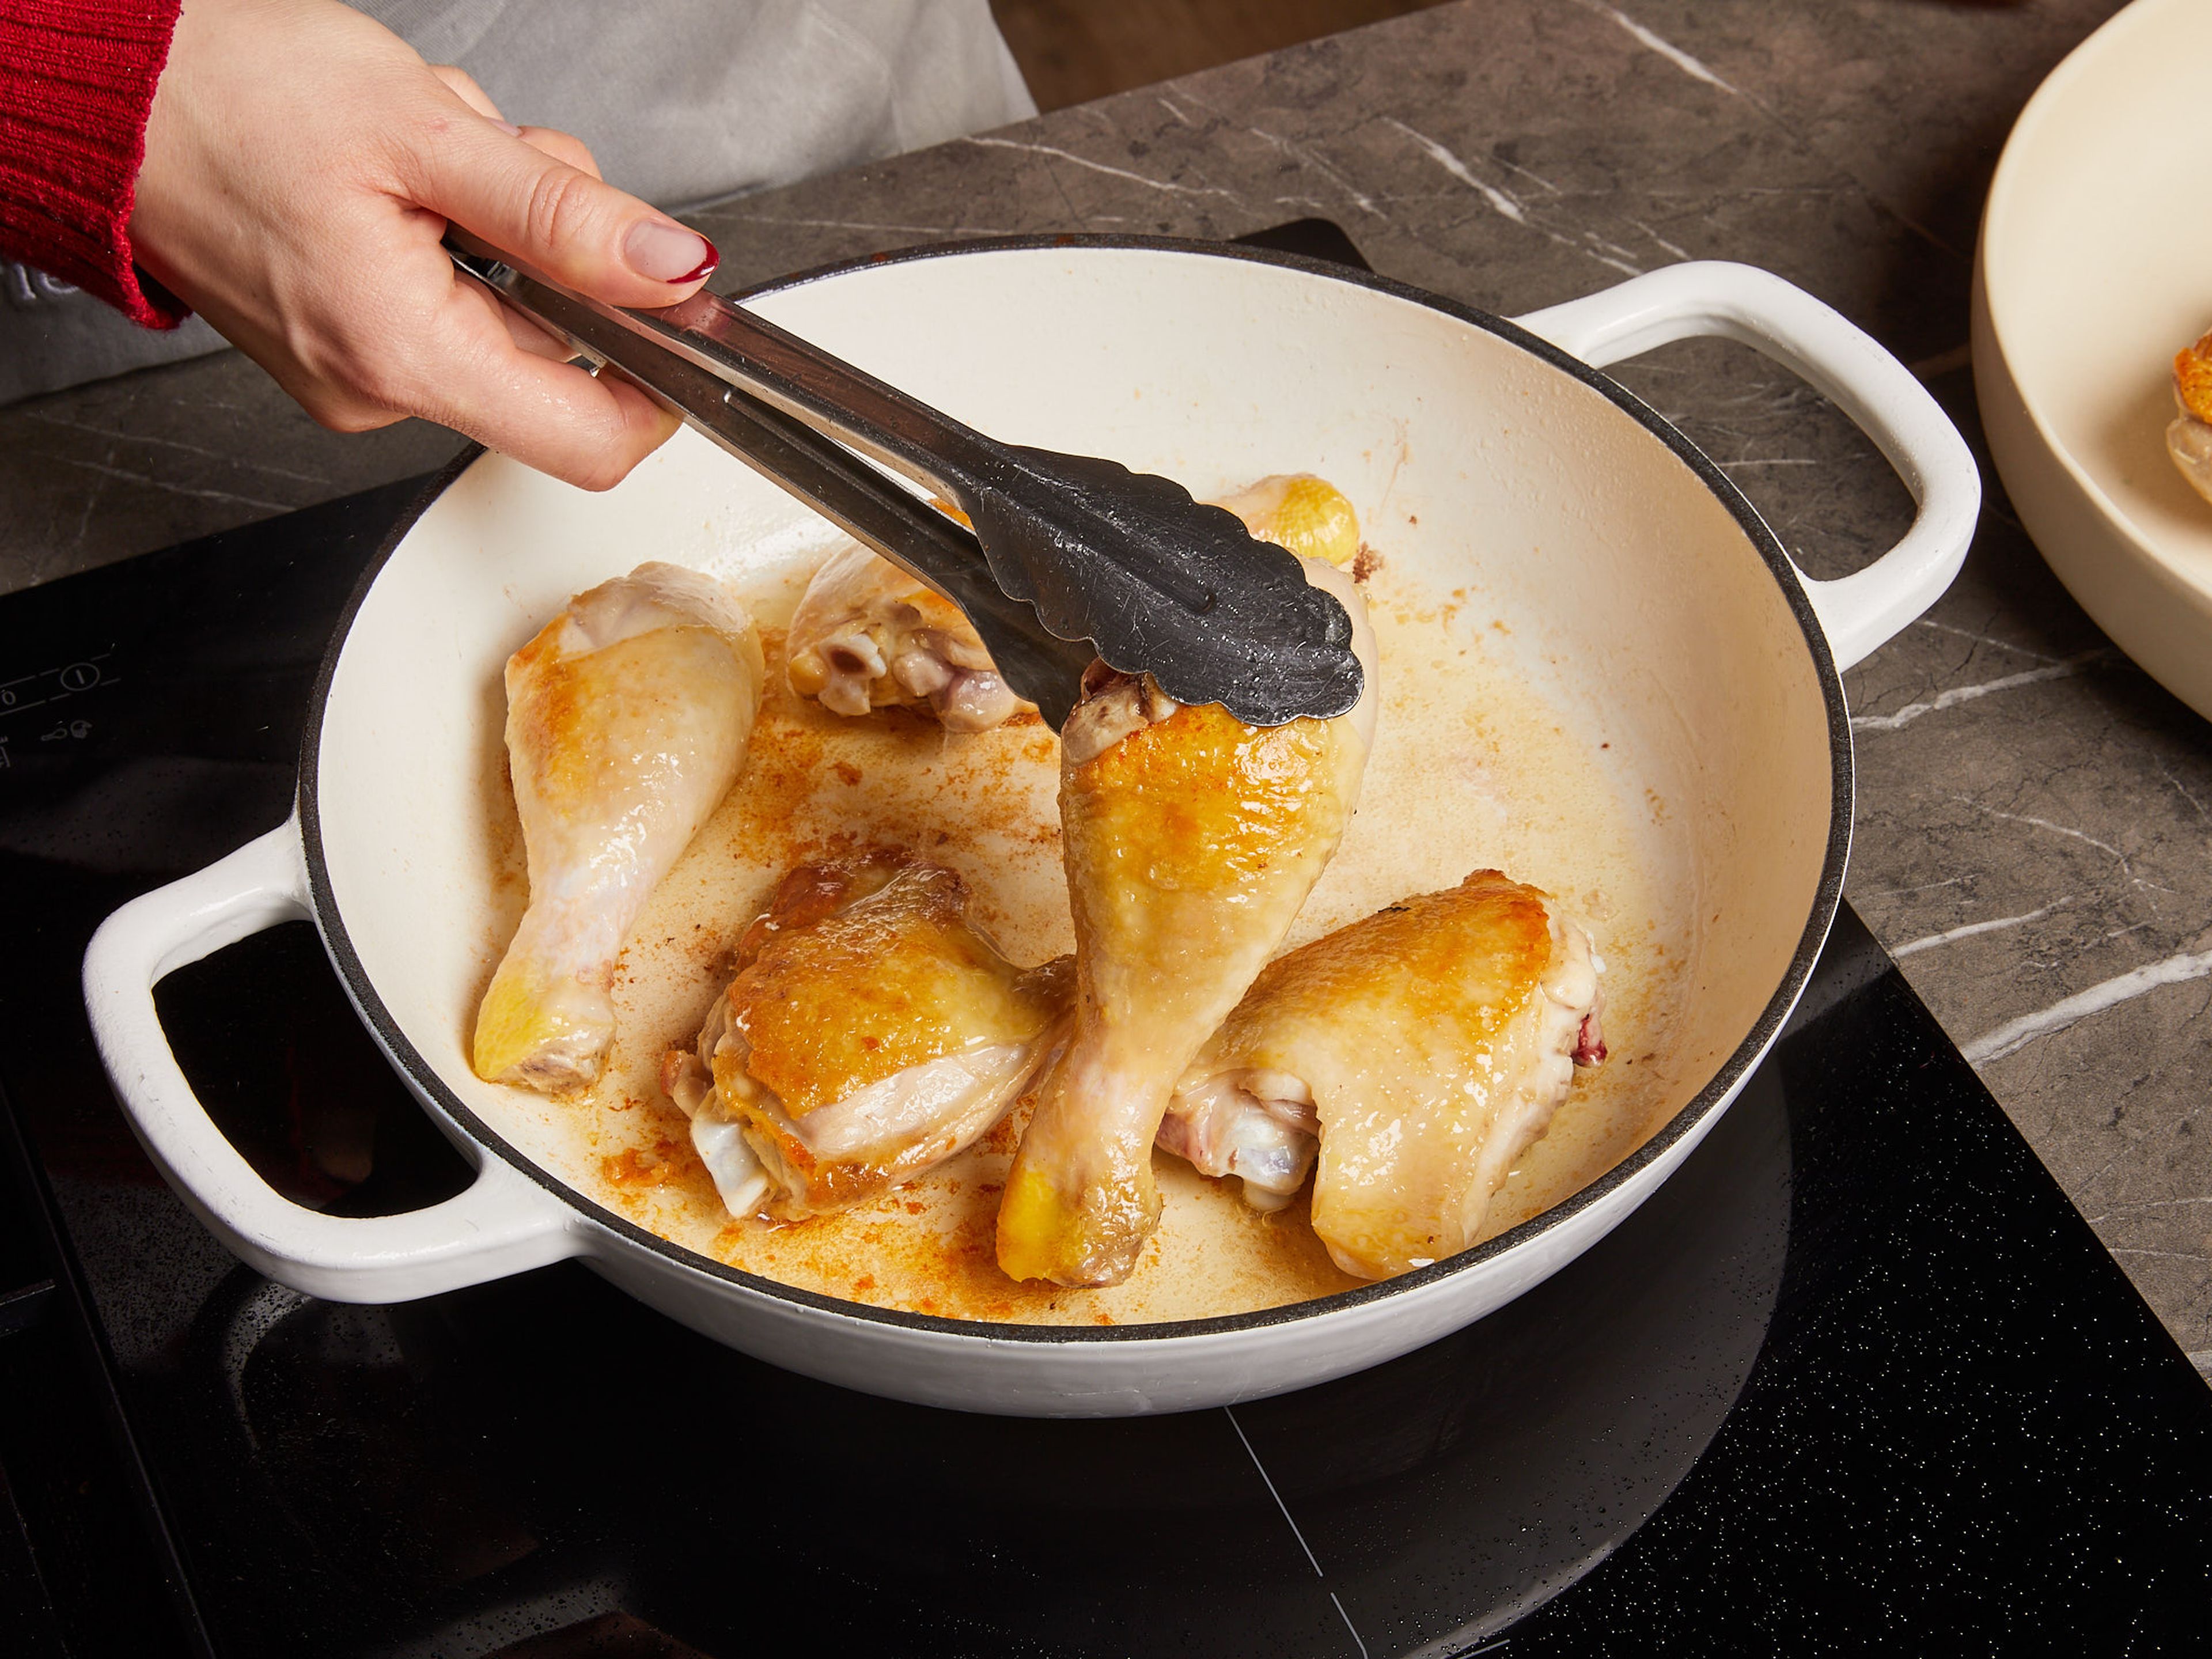 Ein wenig Öl in einer großen Pfanne erhitzen. Die Hähnchenschenkelstücke salzen und von allen Seiten anbraten, bis das Fleisch auf beiden Seiten goldbraun ist. Dann das Fleisch aus der Pfanne nehmen.